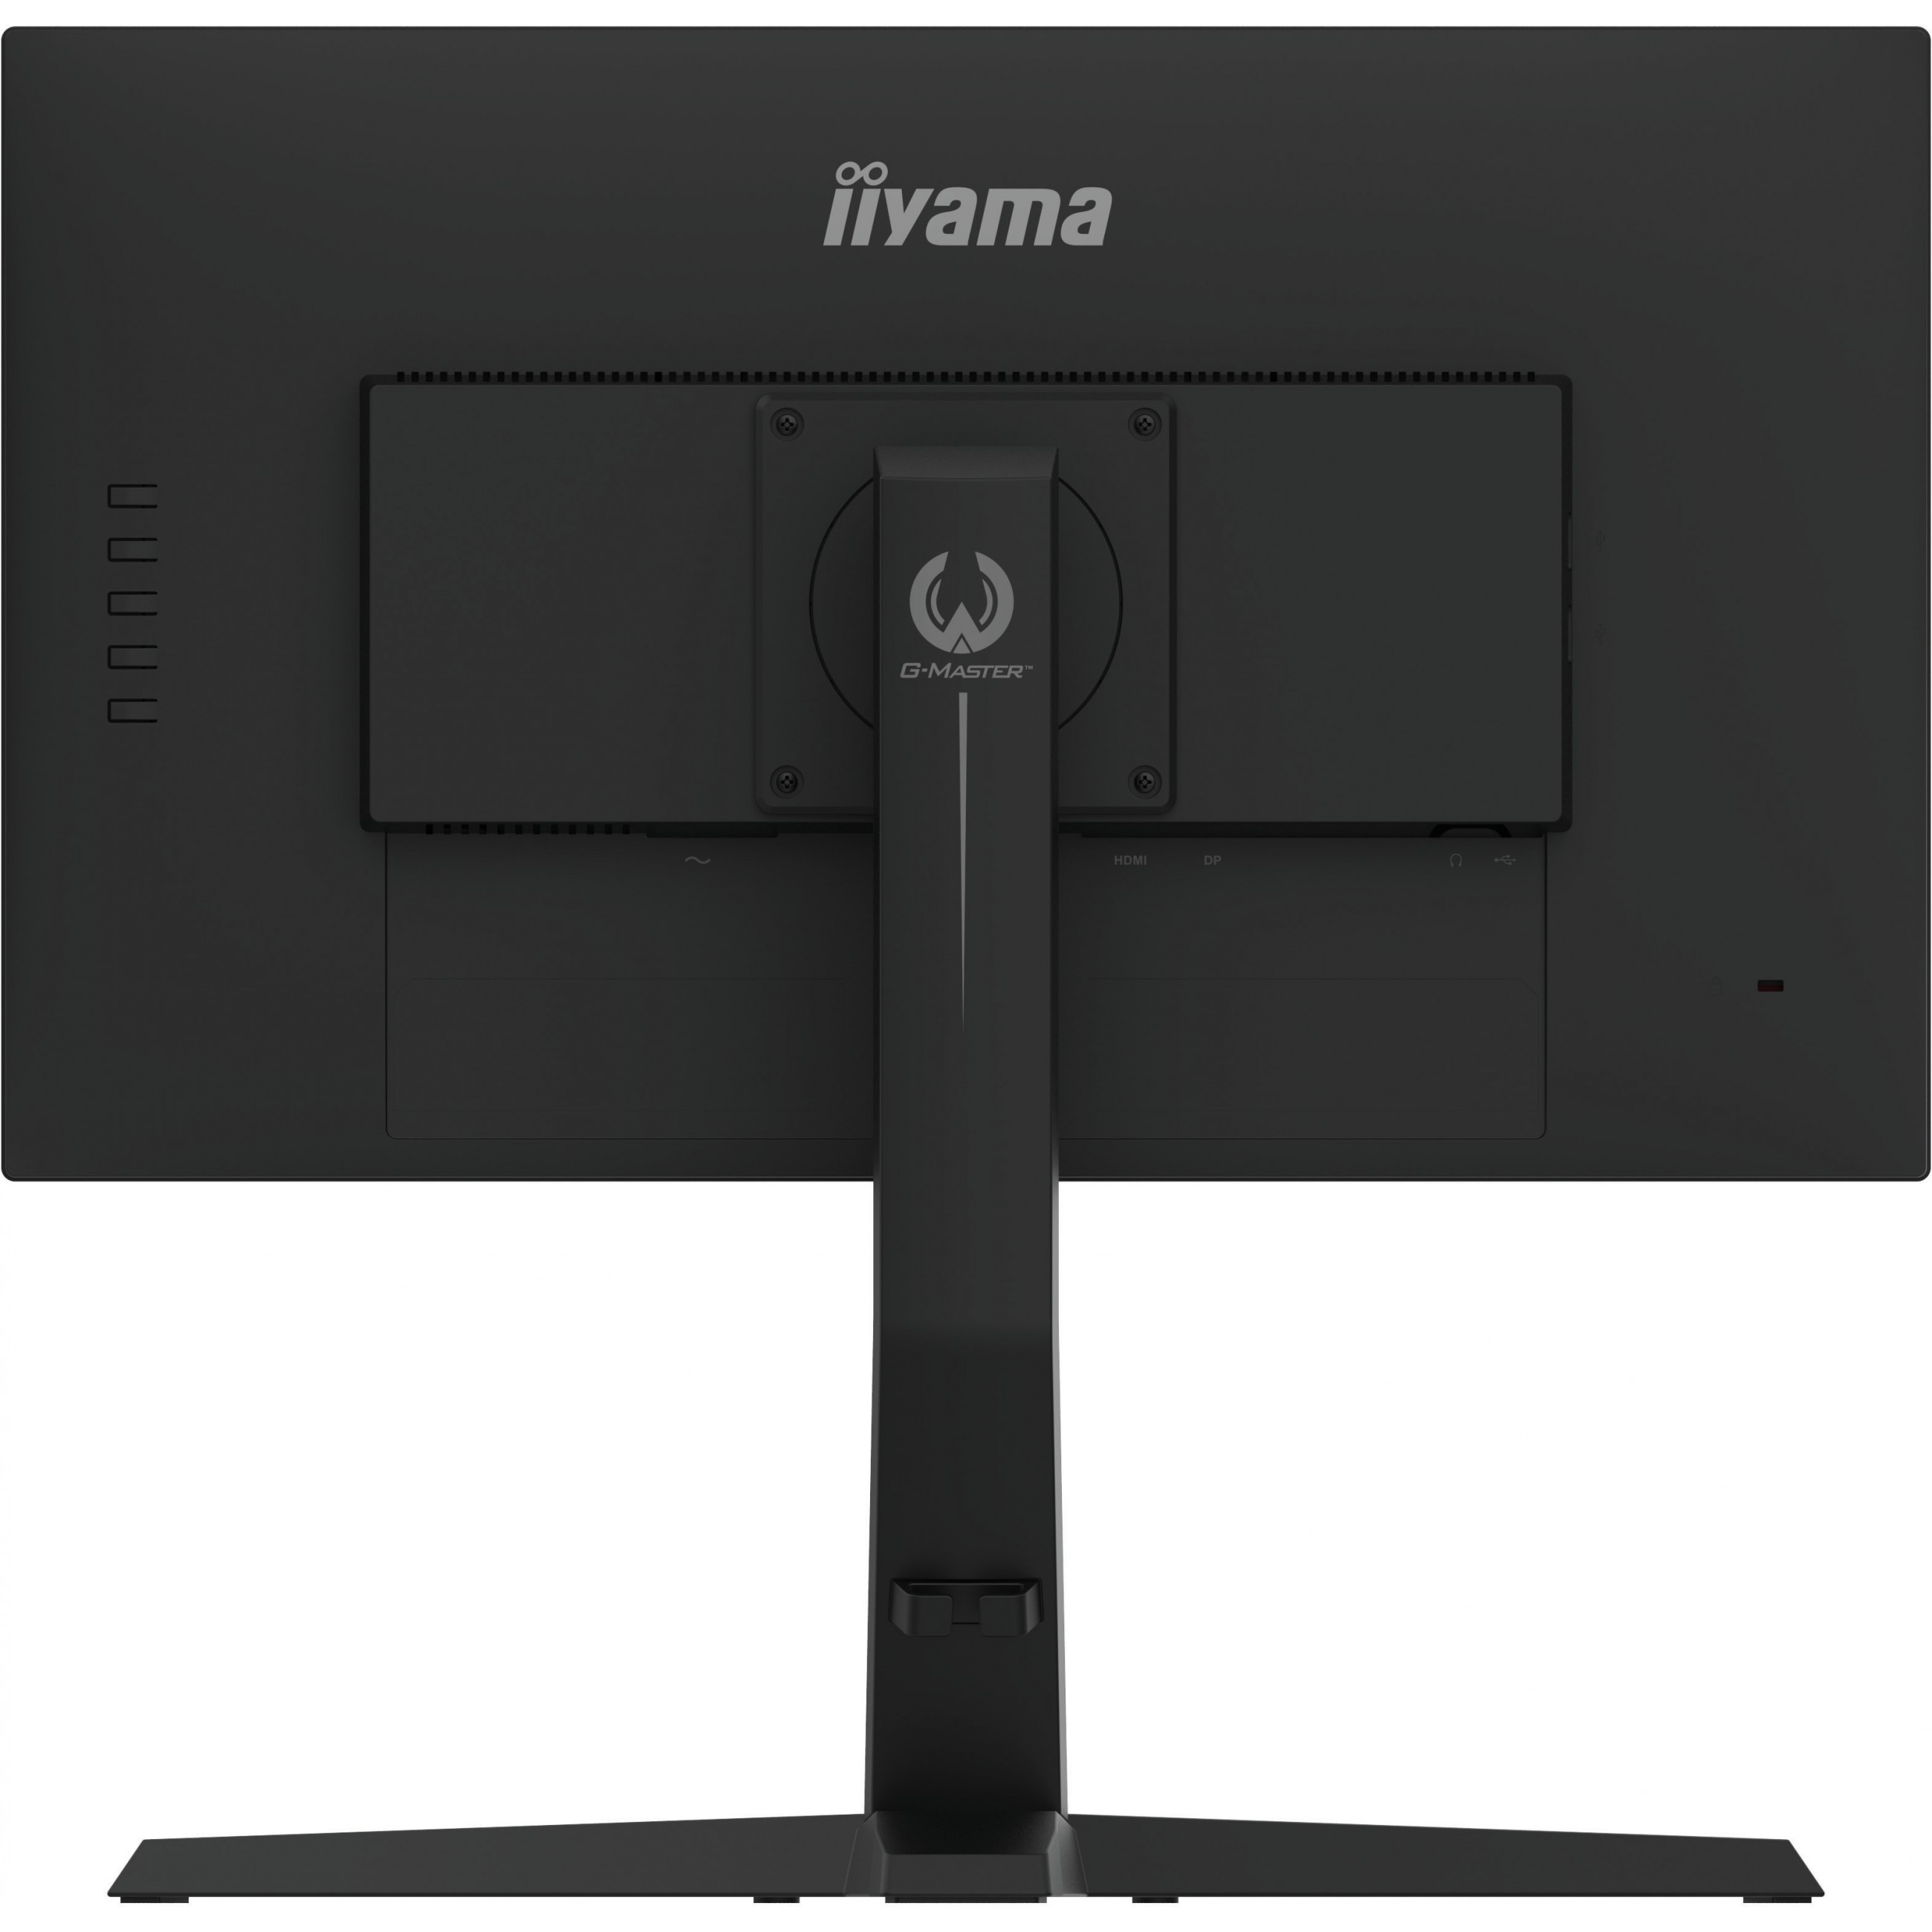 iiyama G-MASTER GB2470HSU-B1, 60,5 cm (23.8 Zoll), 1920 x 1080 Pixel, Full HD, LED, 0,8 ms, Schwarz